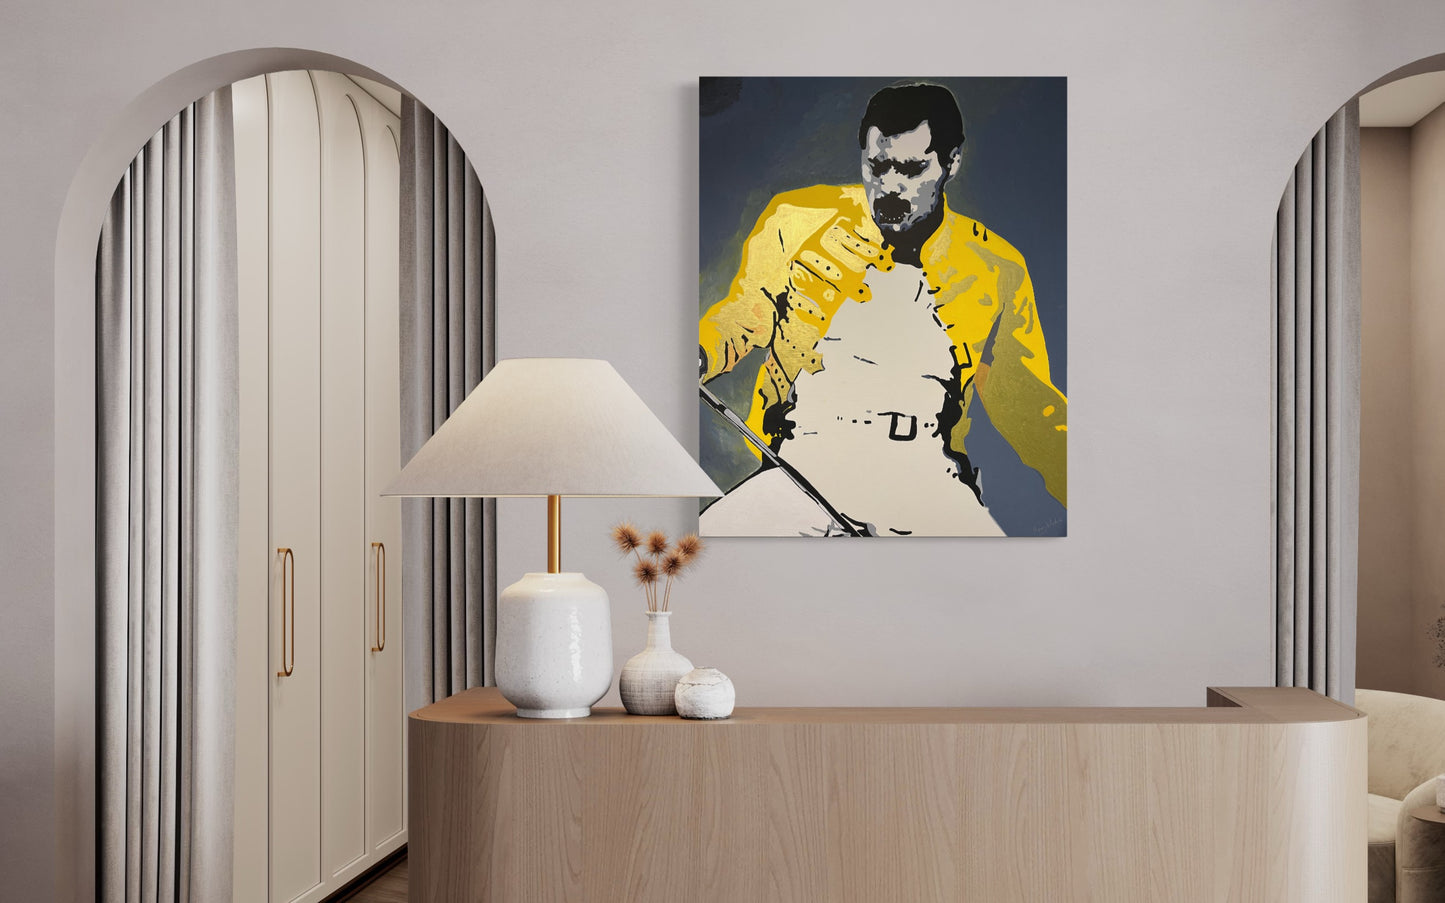 Freddie Mercury - "Play The Game"